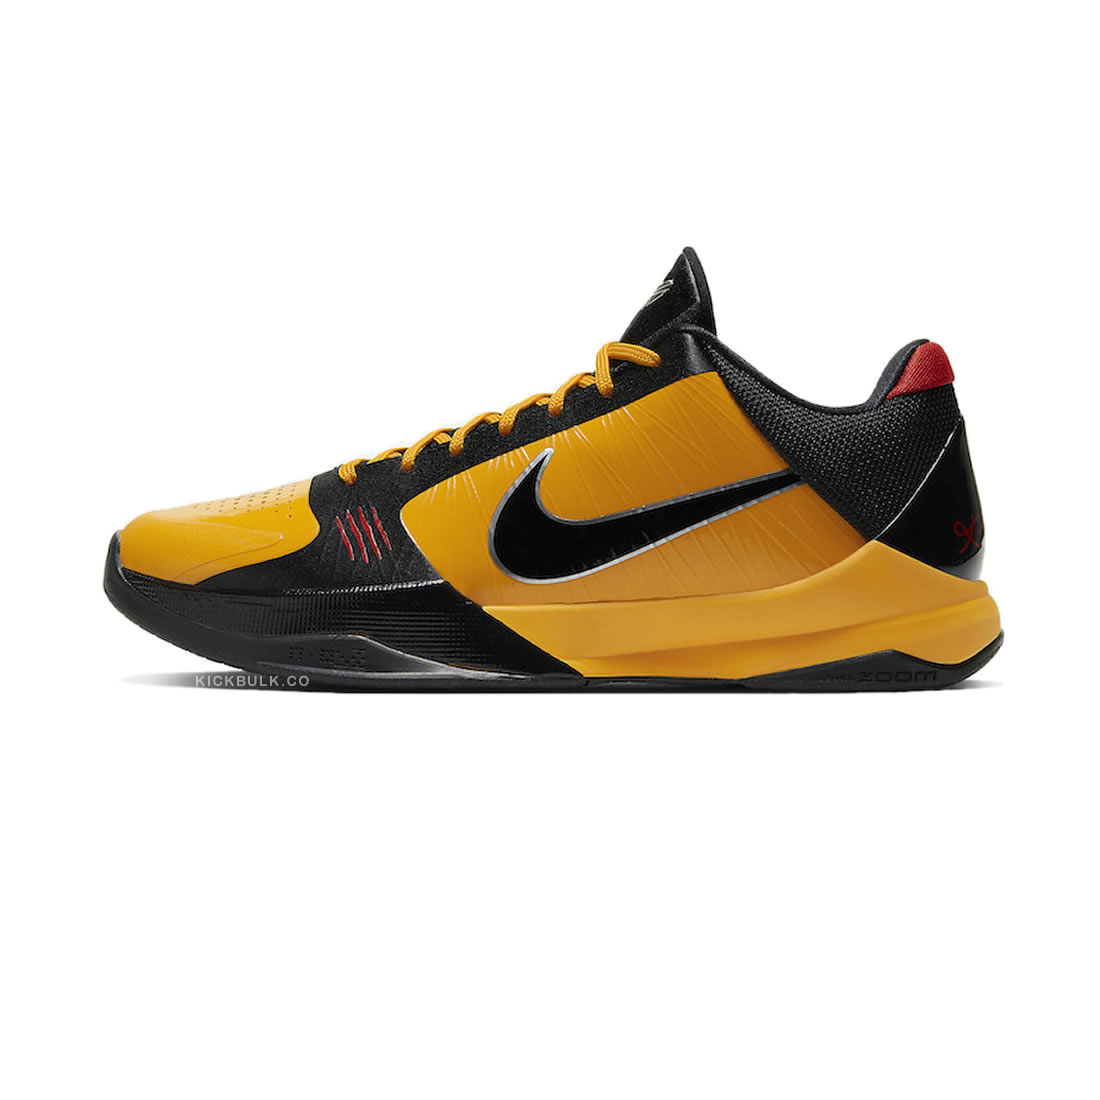 Nike Zoom Kobe 5 Protro Bruce Lee Cd4991 700 1 - kickbulk.co